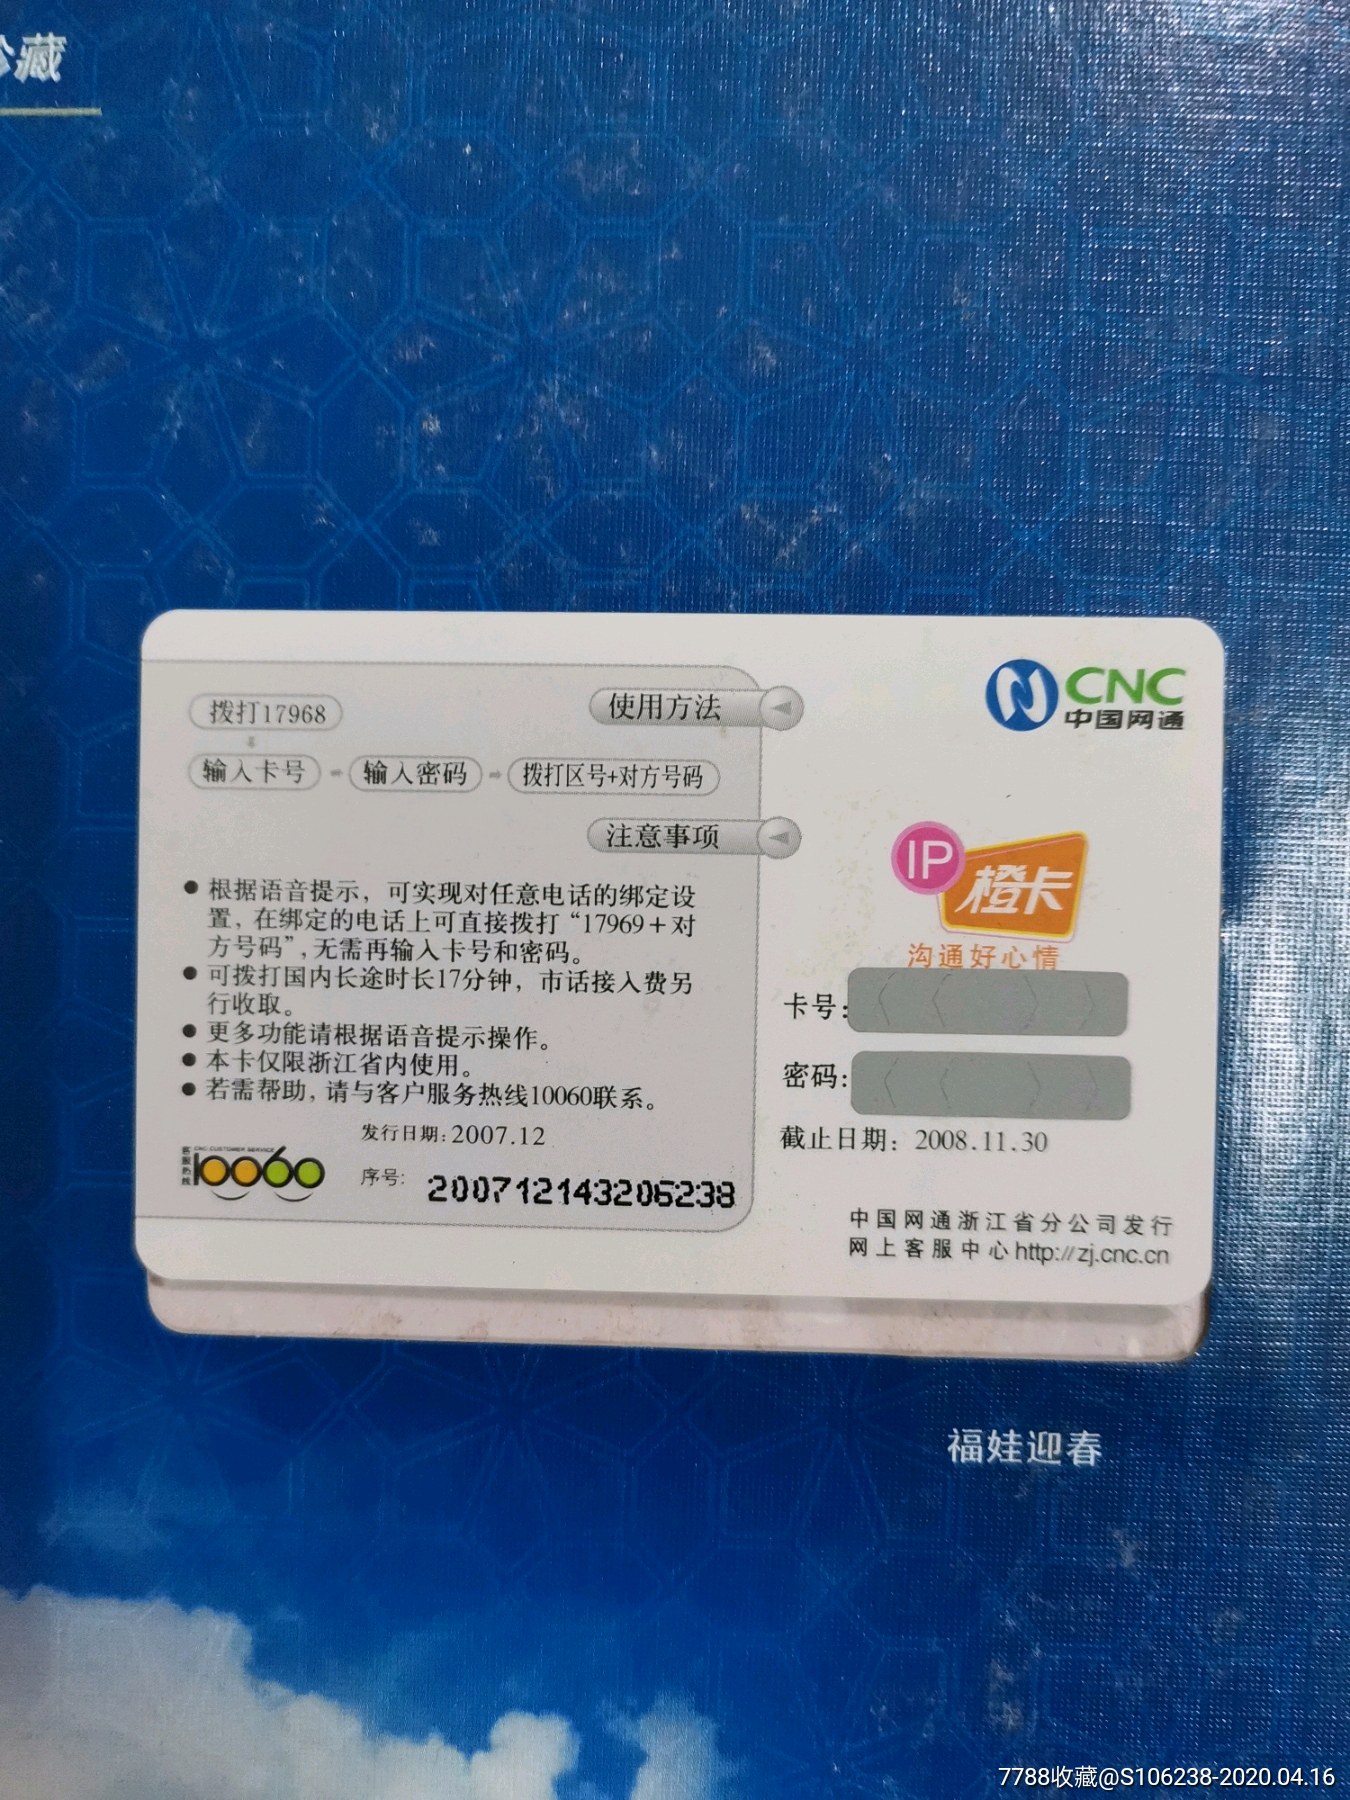 中国网通:北京2008年奥运会纪念电话卡珍藏11全